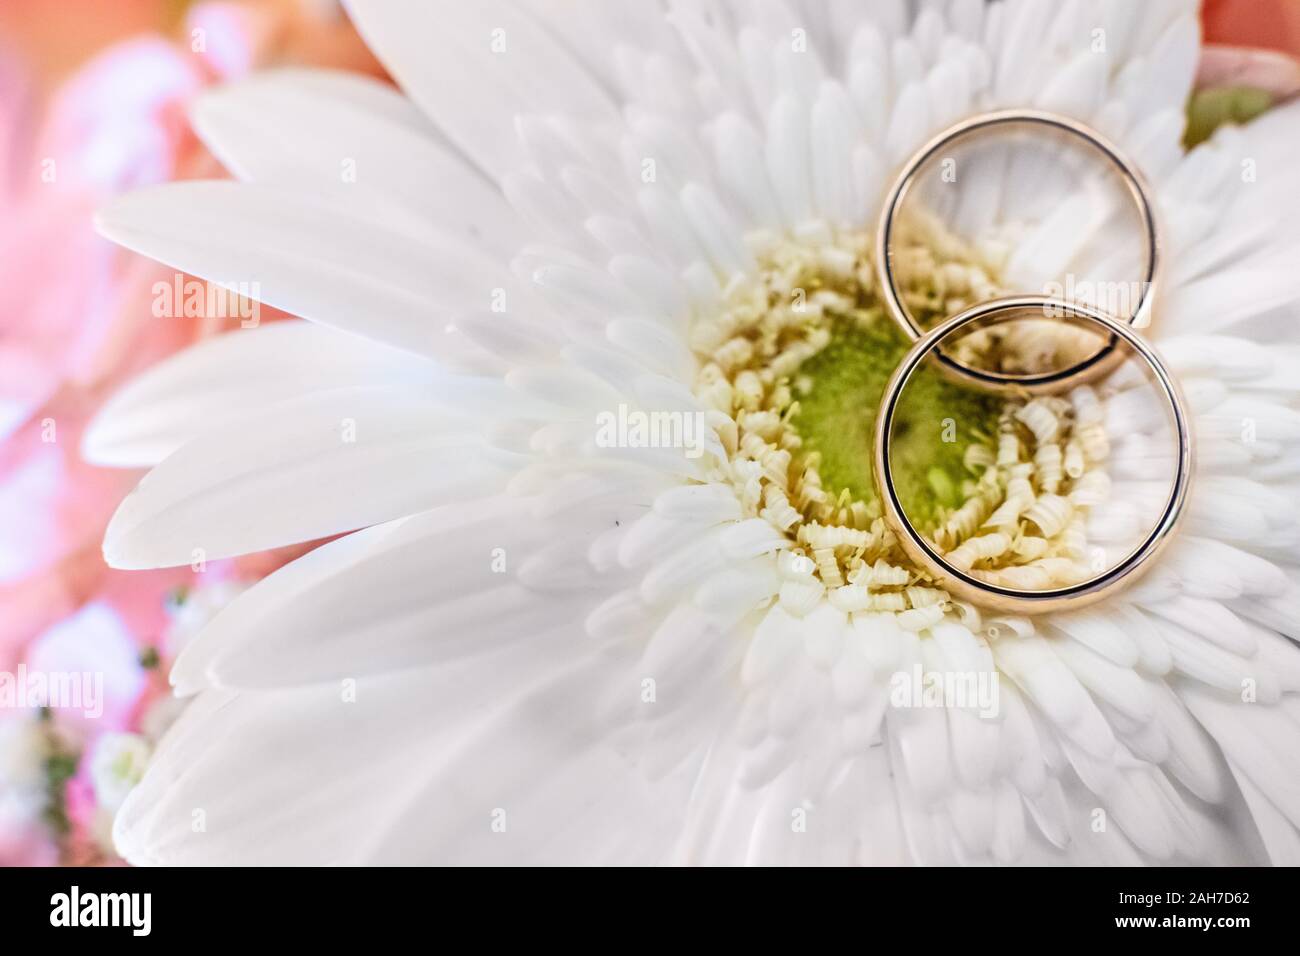 Zwei goldene Eheringe liegen auf einer weißen Gänseblümchen-Blüte Gegen einen rosa Bokeh Hintergrund Stockfoto